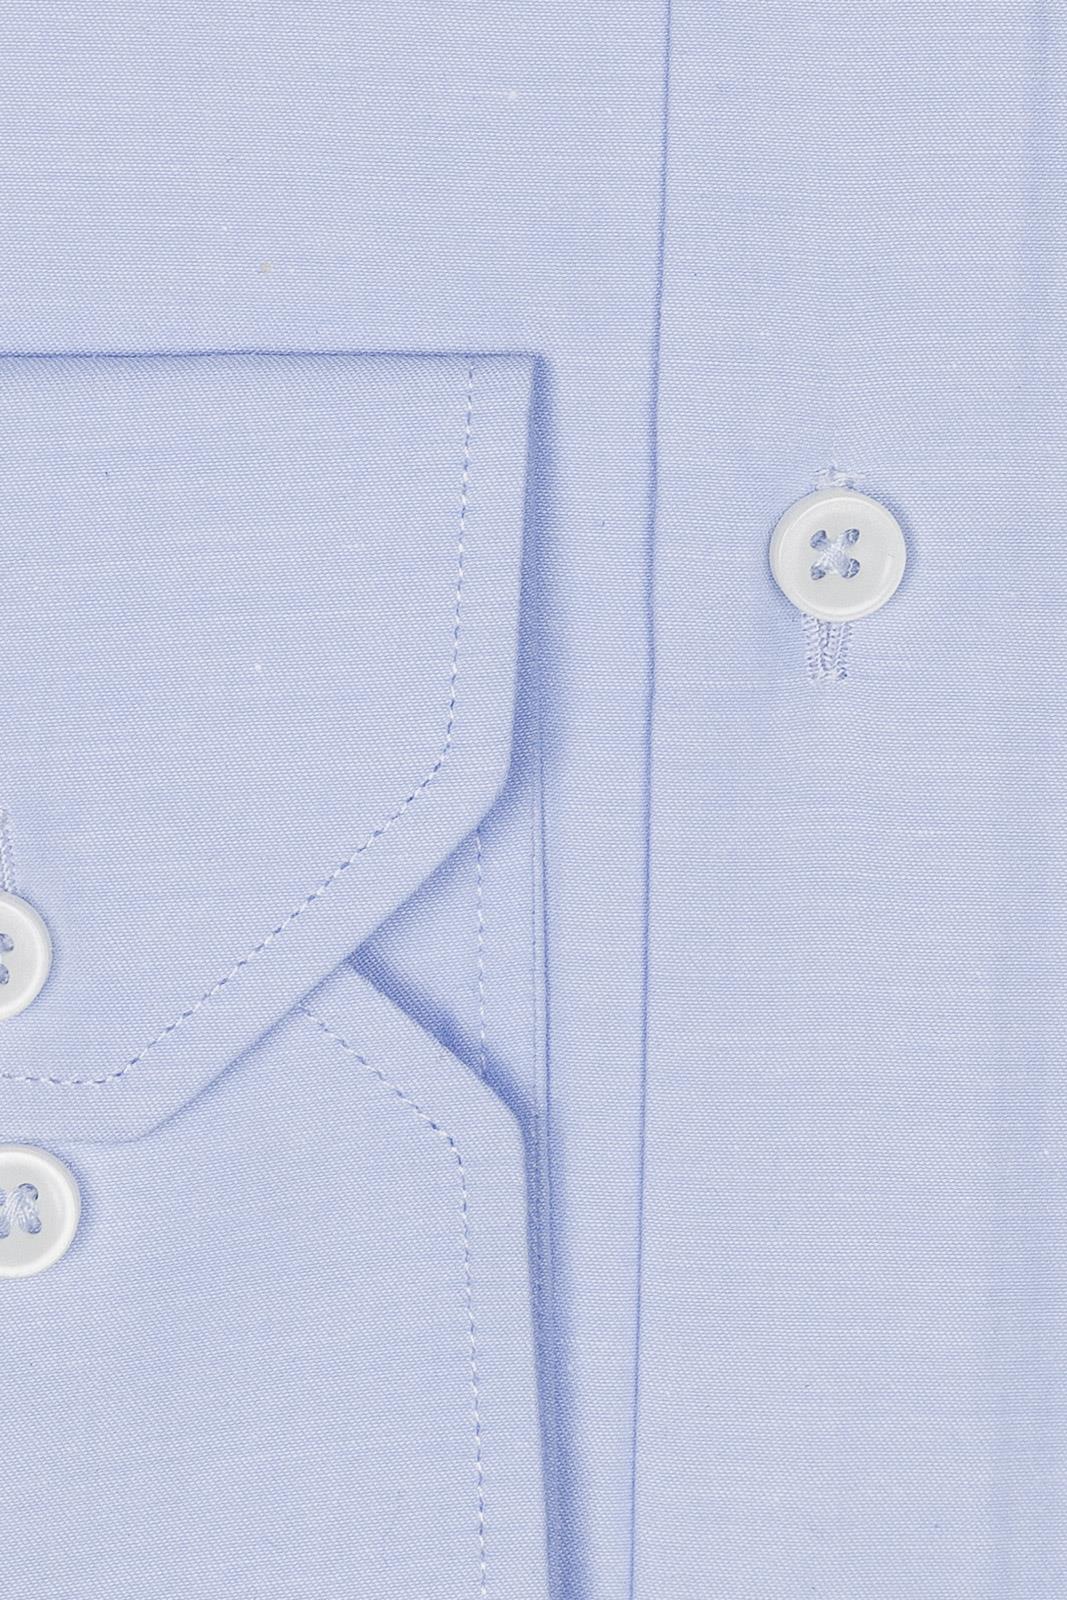 Camicie no stiro: tutto quelle che devi sapere sulle camicie easy iron